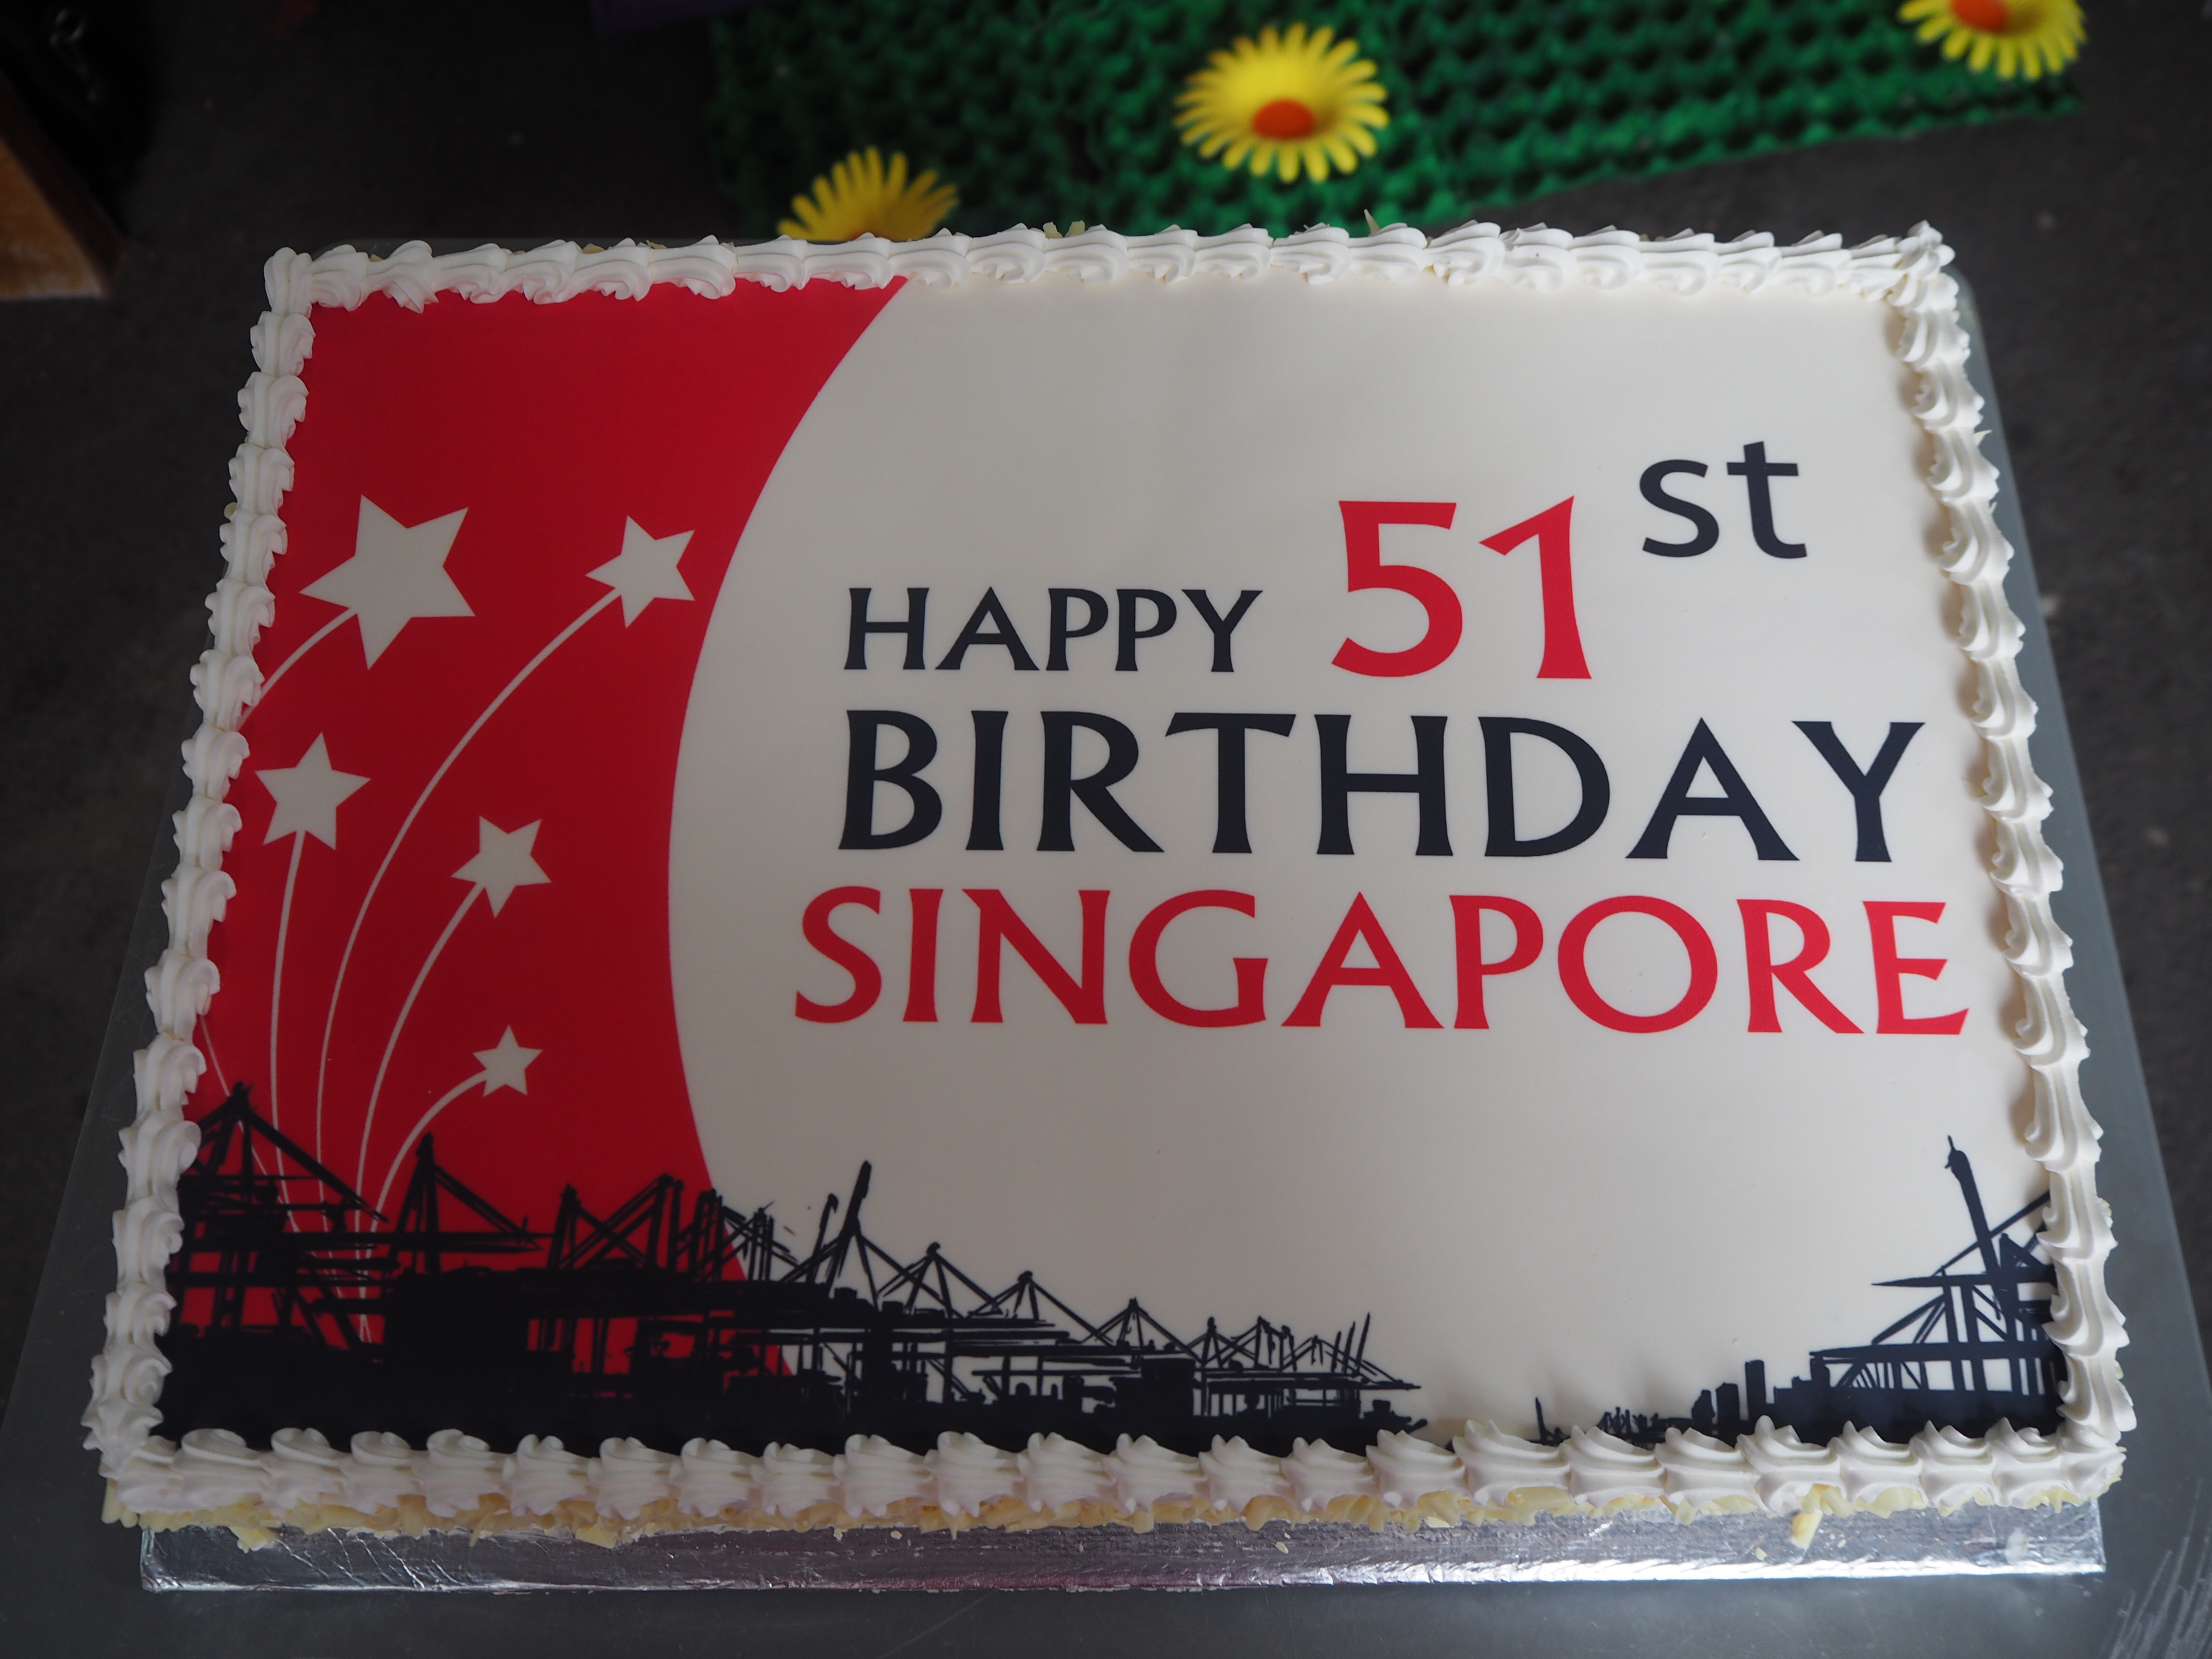 Birthday Cakes In Singapore by Jade Wee | Burpple